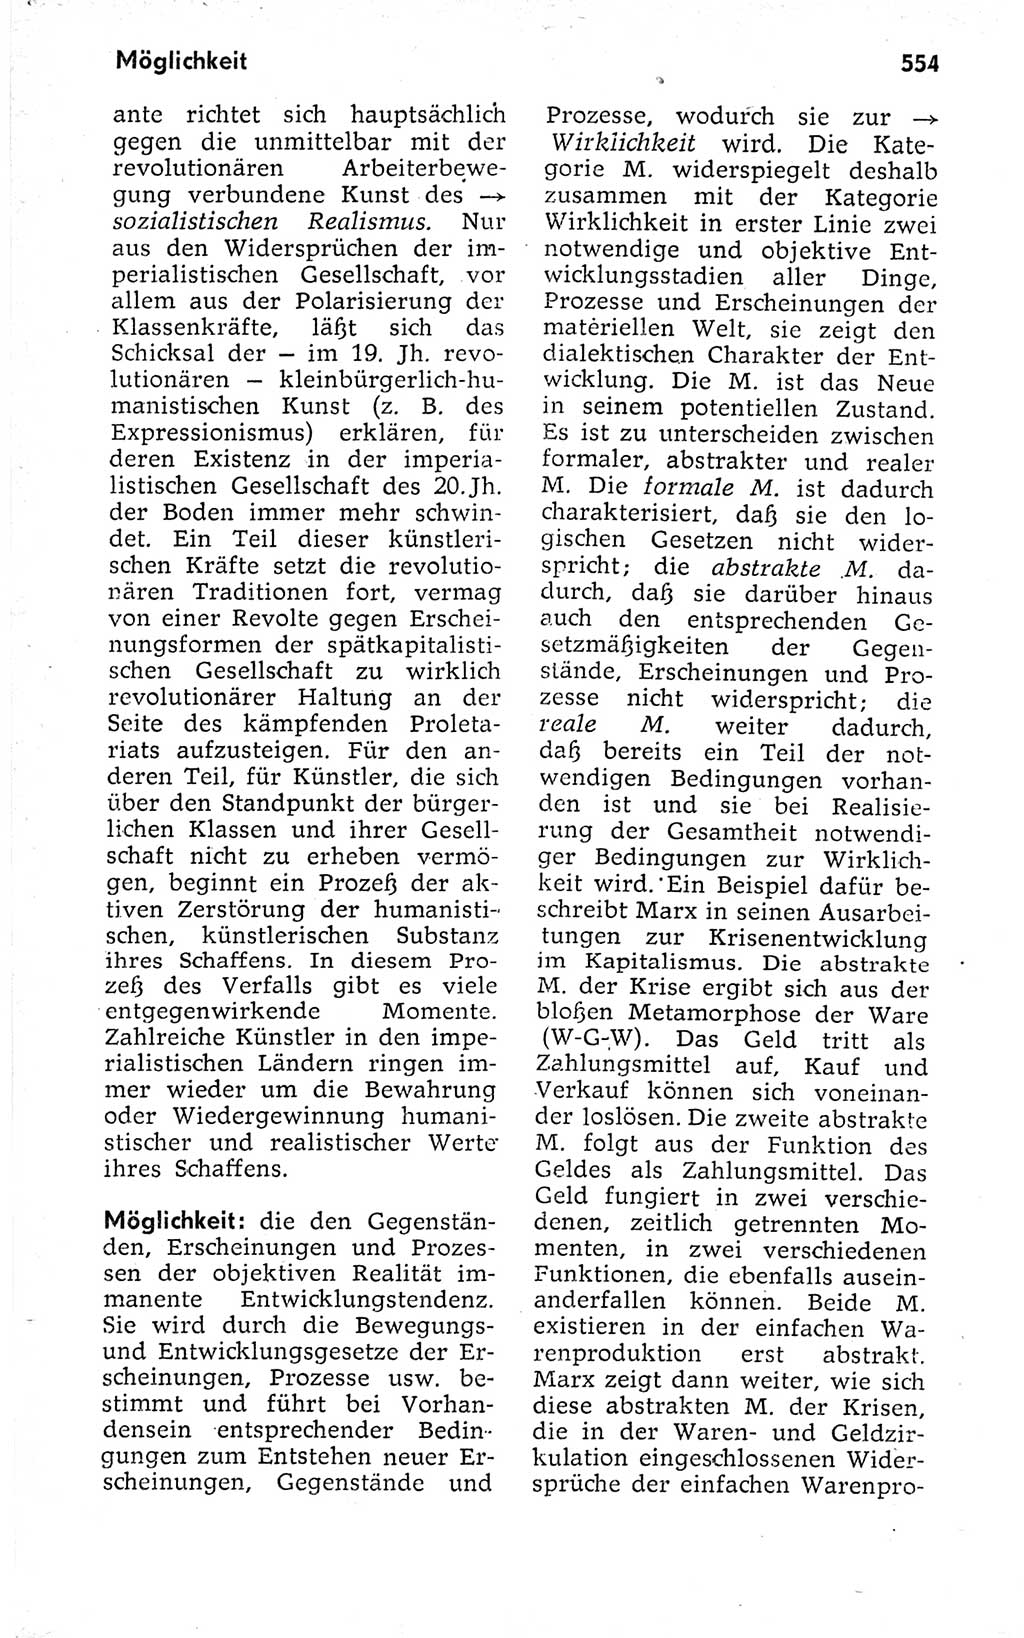 Kleines politisches Wörterbuch [Deutsche Demokratische Republik (DDR)] 1973, Seite 554 (Kl. pol. Wb. DDR 1973, S. 554)